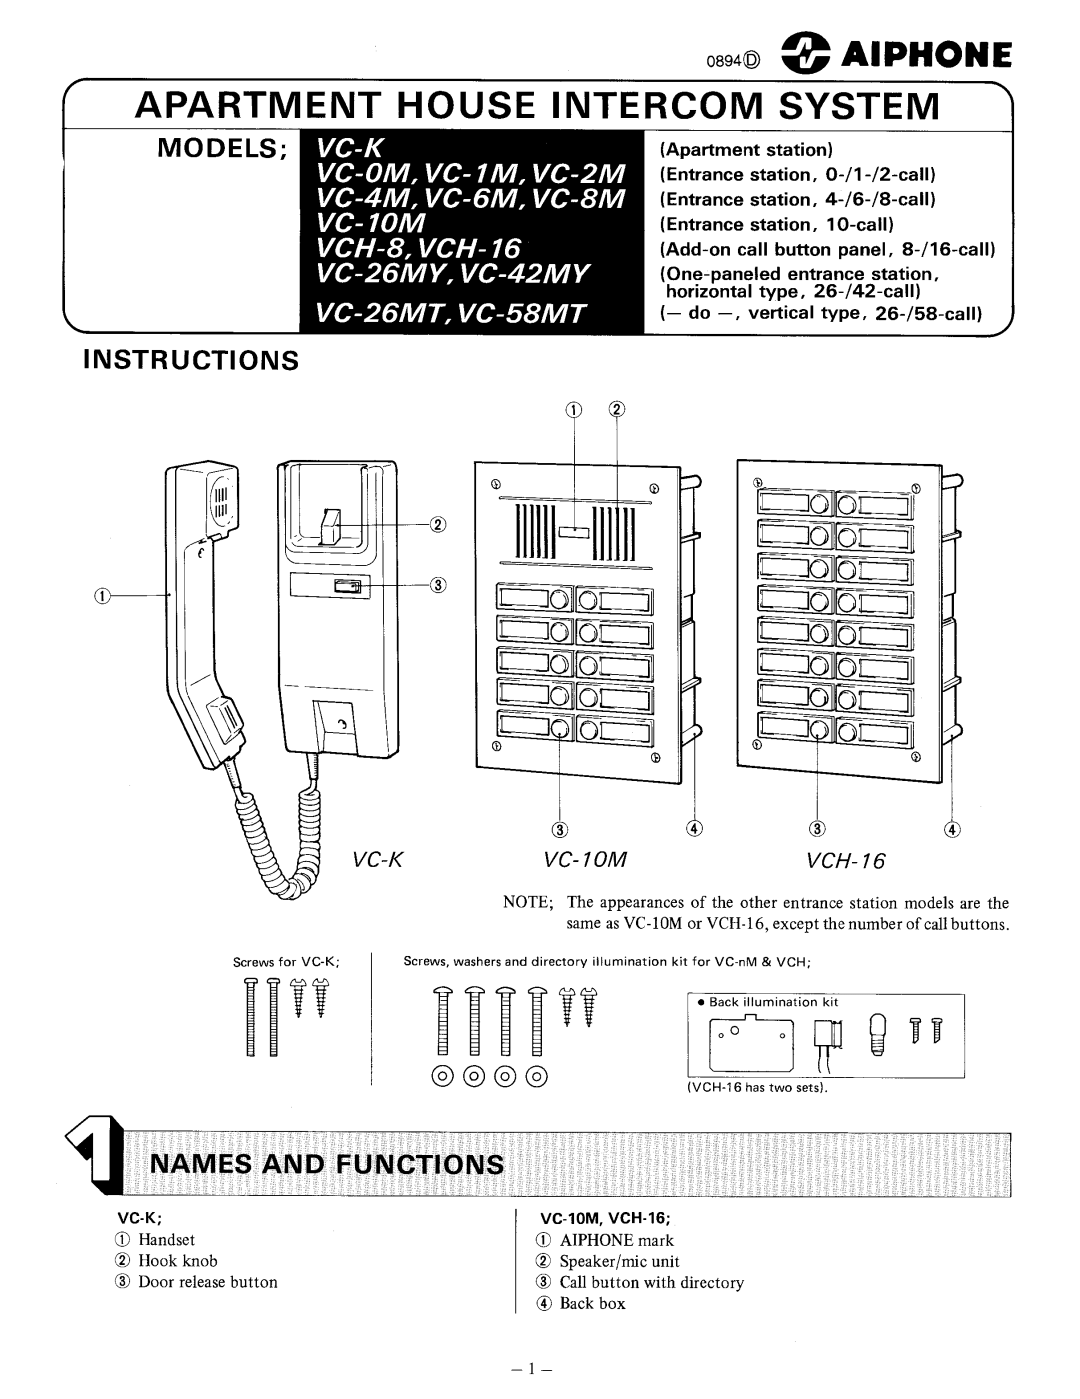 Aiphone VCH-8, VC-K, VCH-16, VC-58MT, VC-26MT manual 